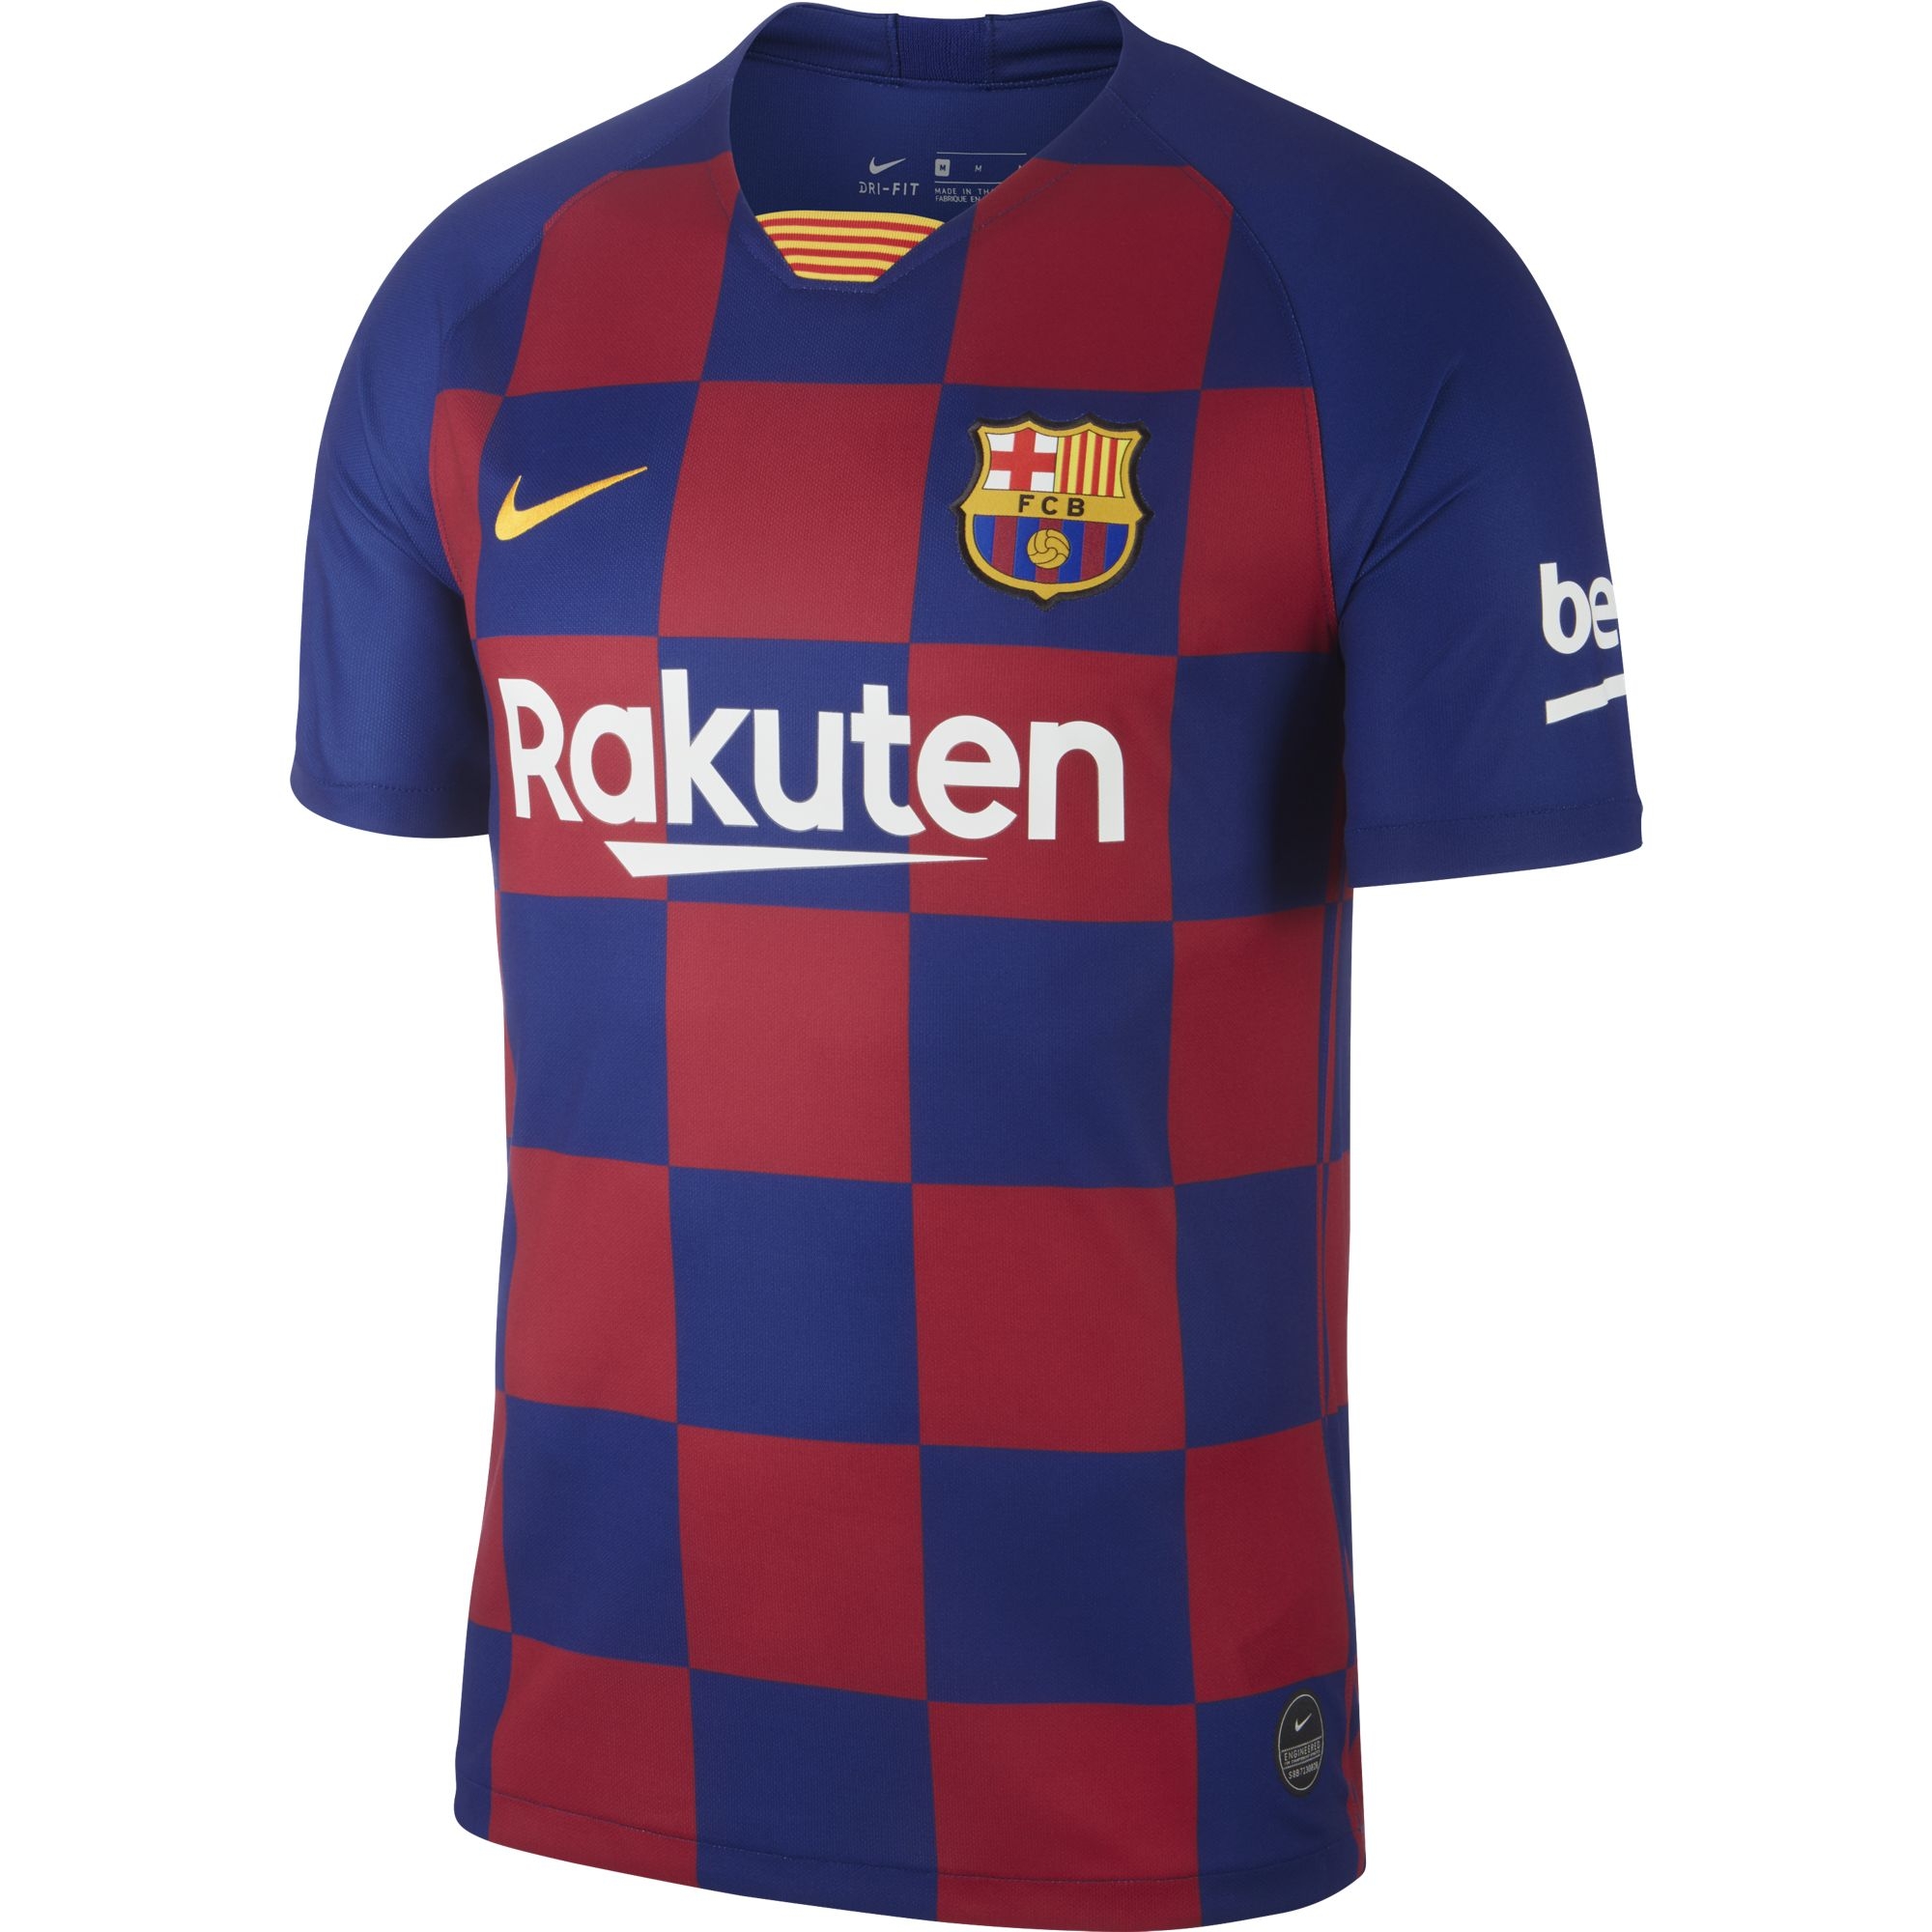 Antoine Griezmann 17 Barcellona FCB Maglia T-Shirt 2019/2020 Barcelona Barça Divisa Replica Ufficiale Autentica Bambino/Ragazzo Adulto Anni 2 4 6 8 10 12 14 S M L XL 